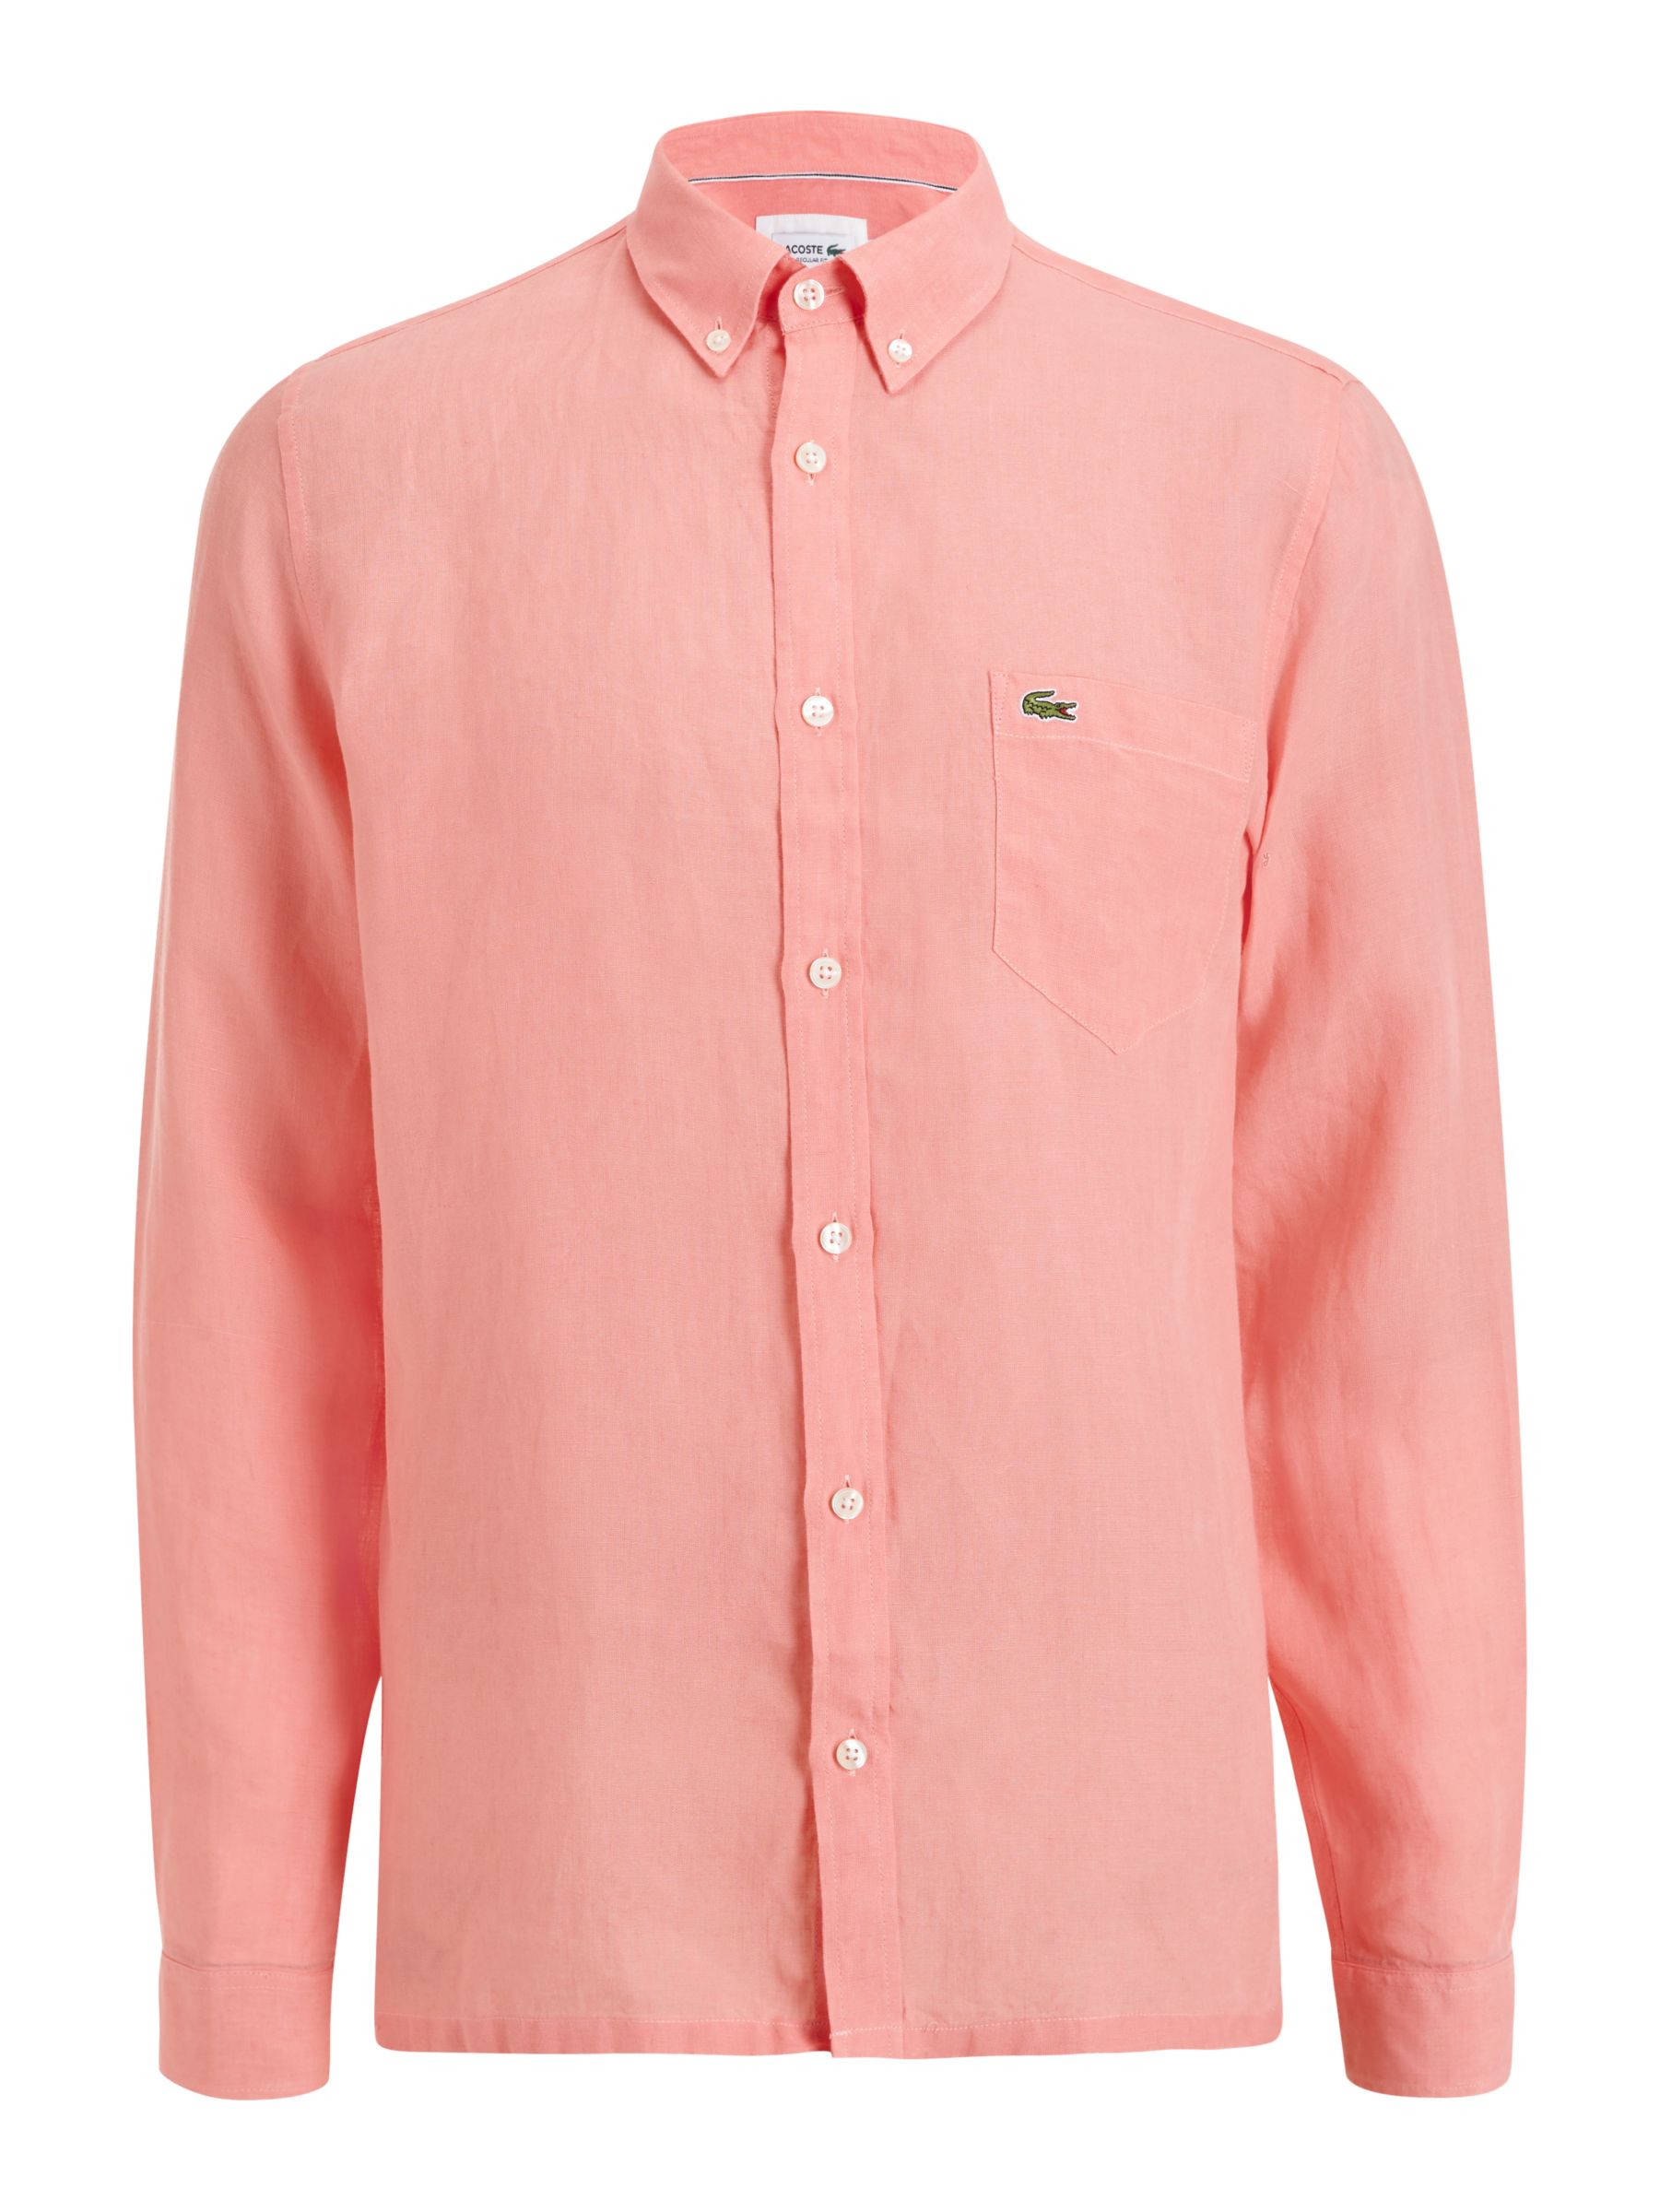 peach lacoste shirt